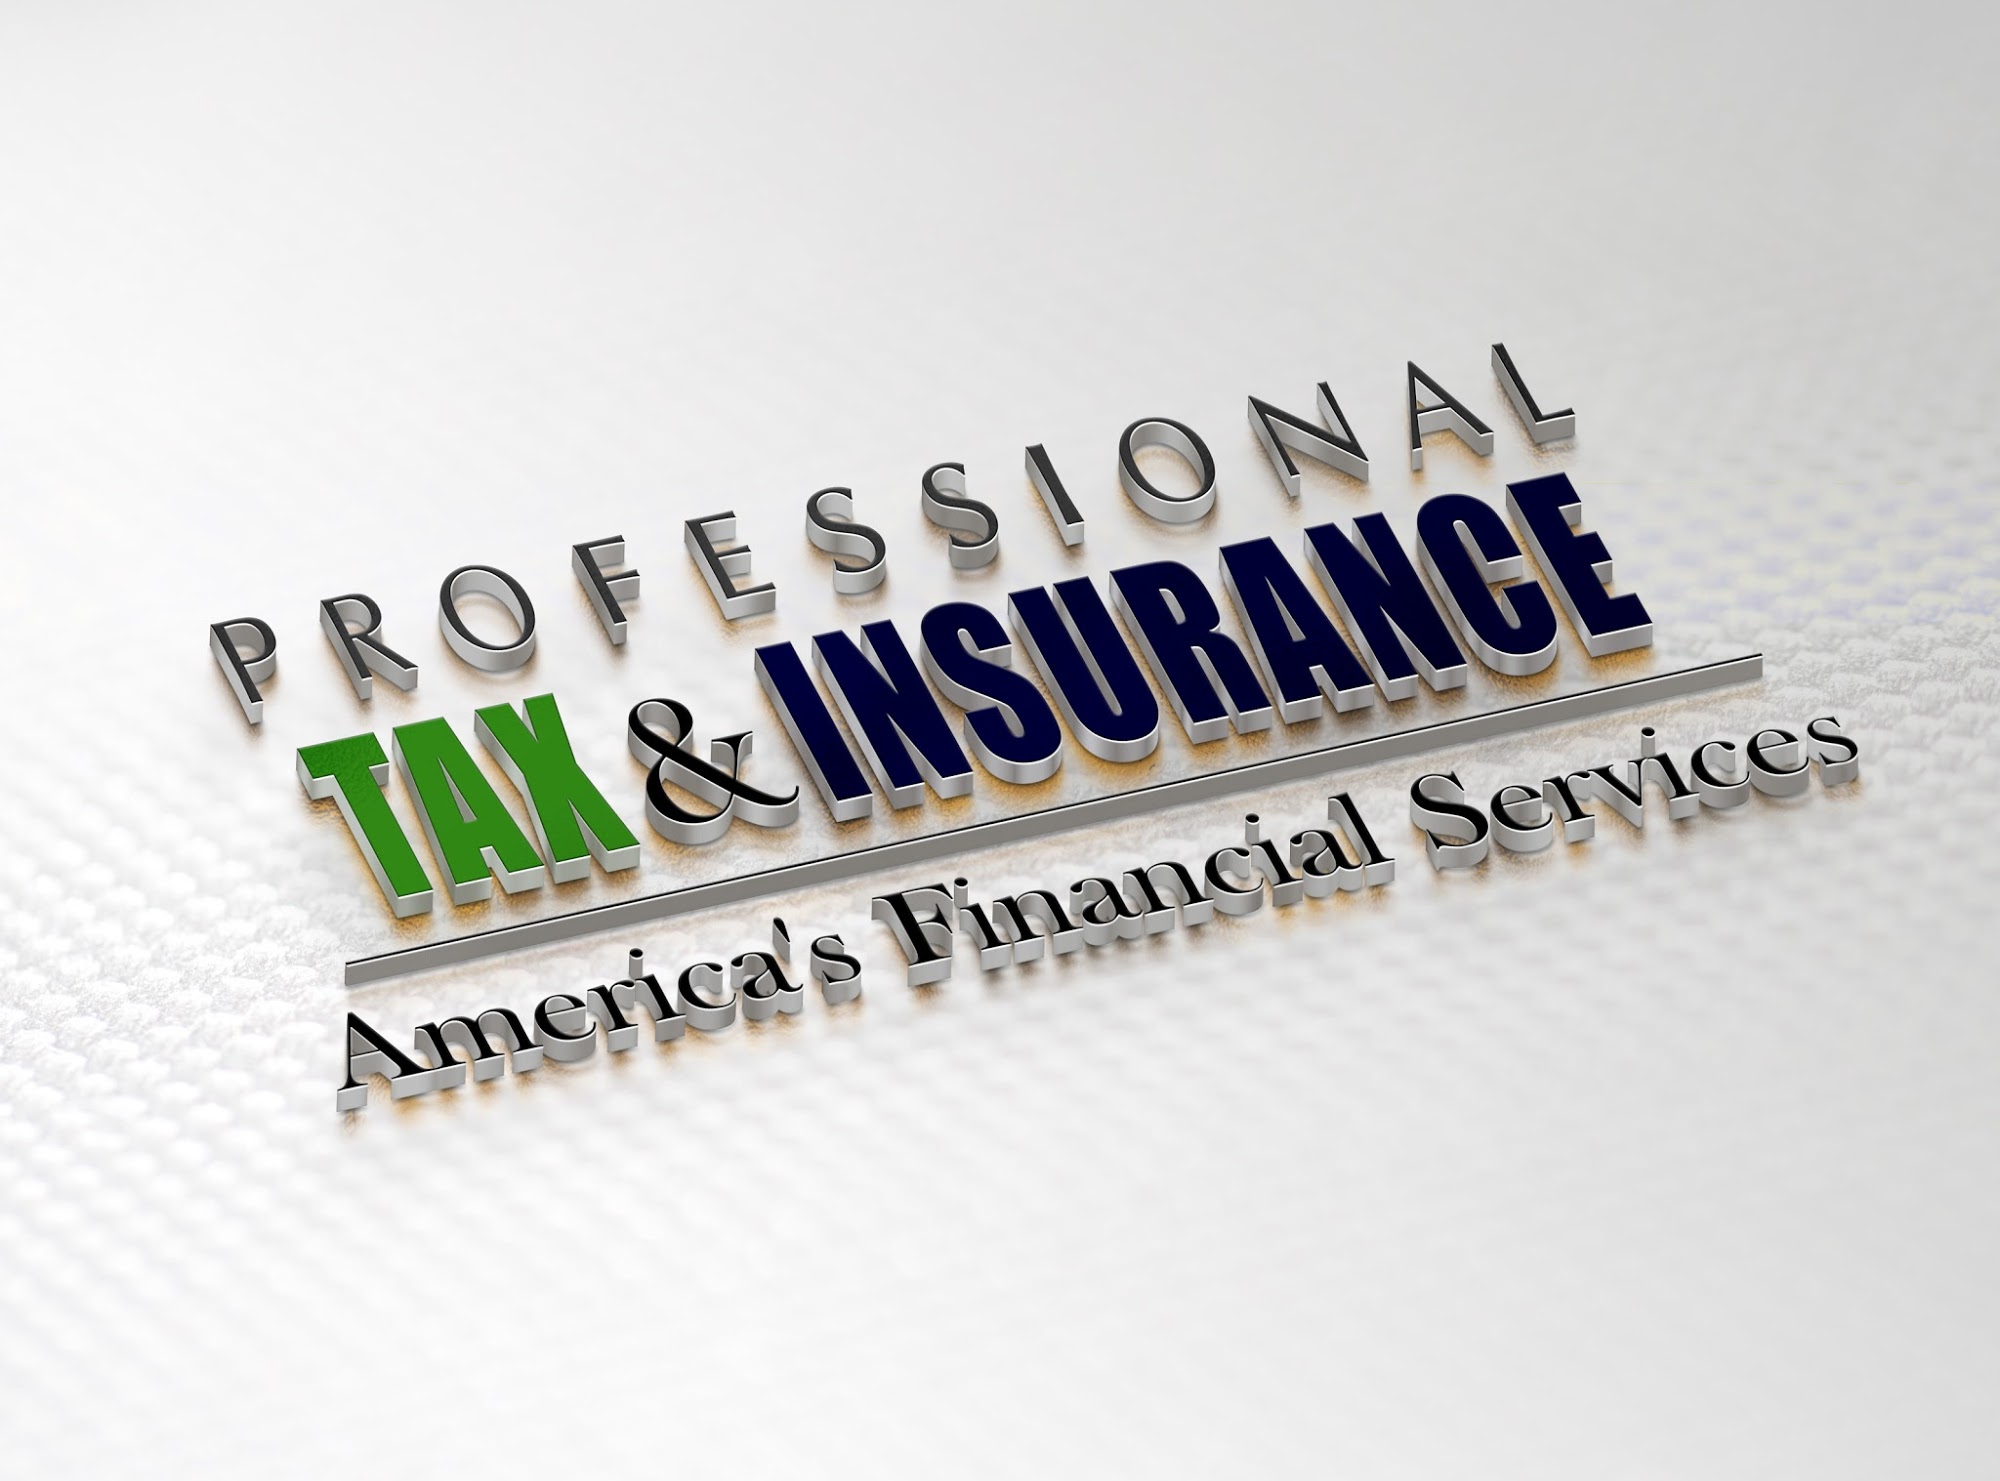 Professional Tax & Insurance